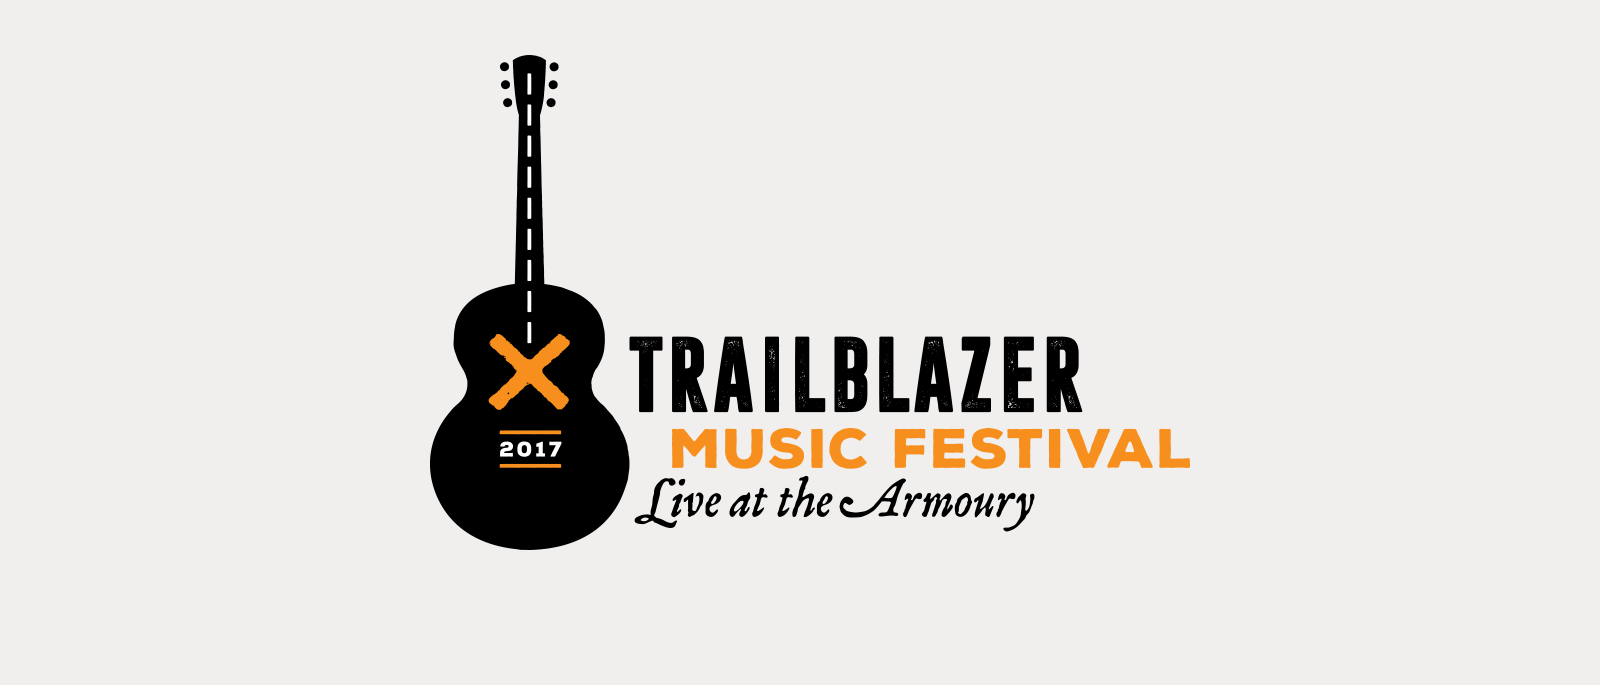 Trailblazer Music Festival - Identity